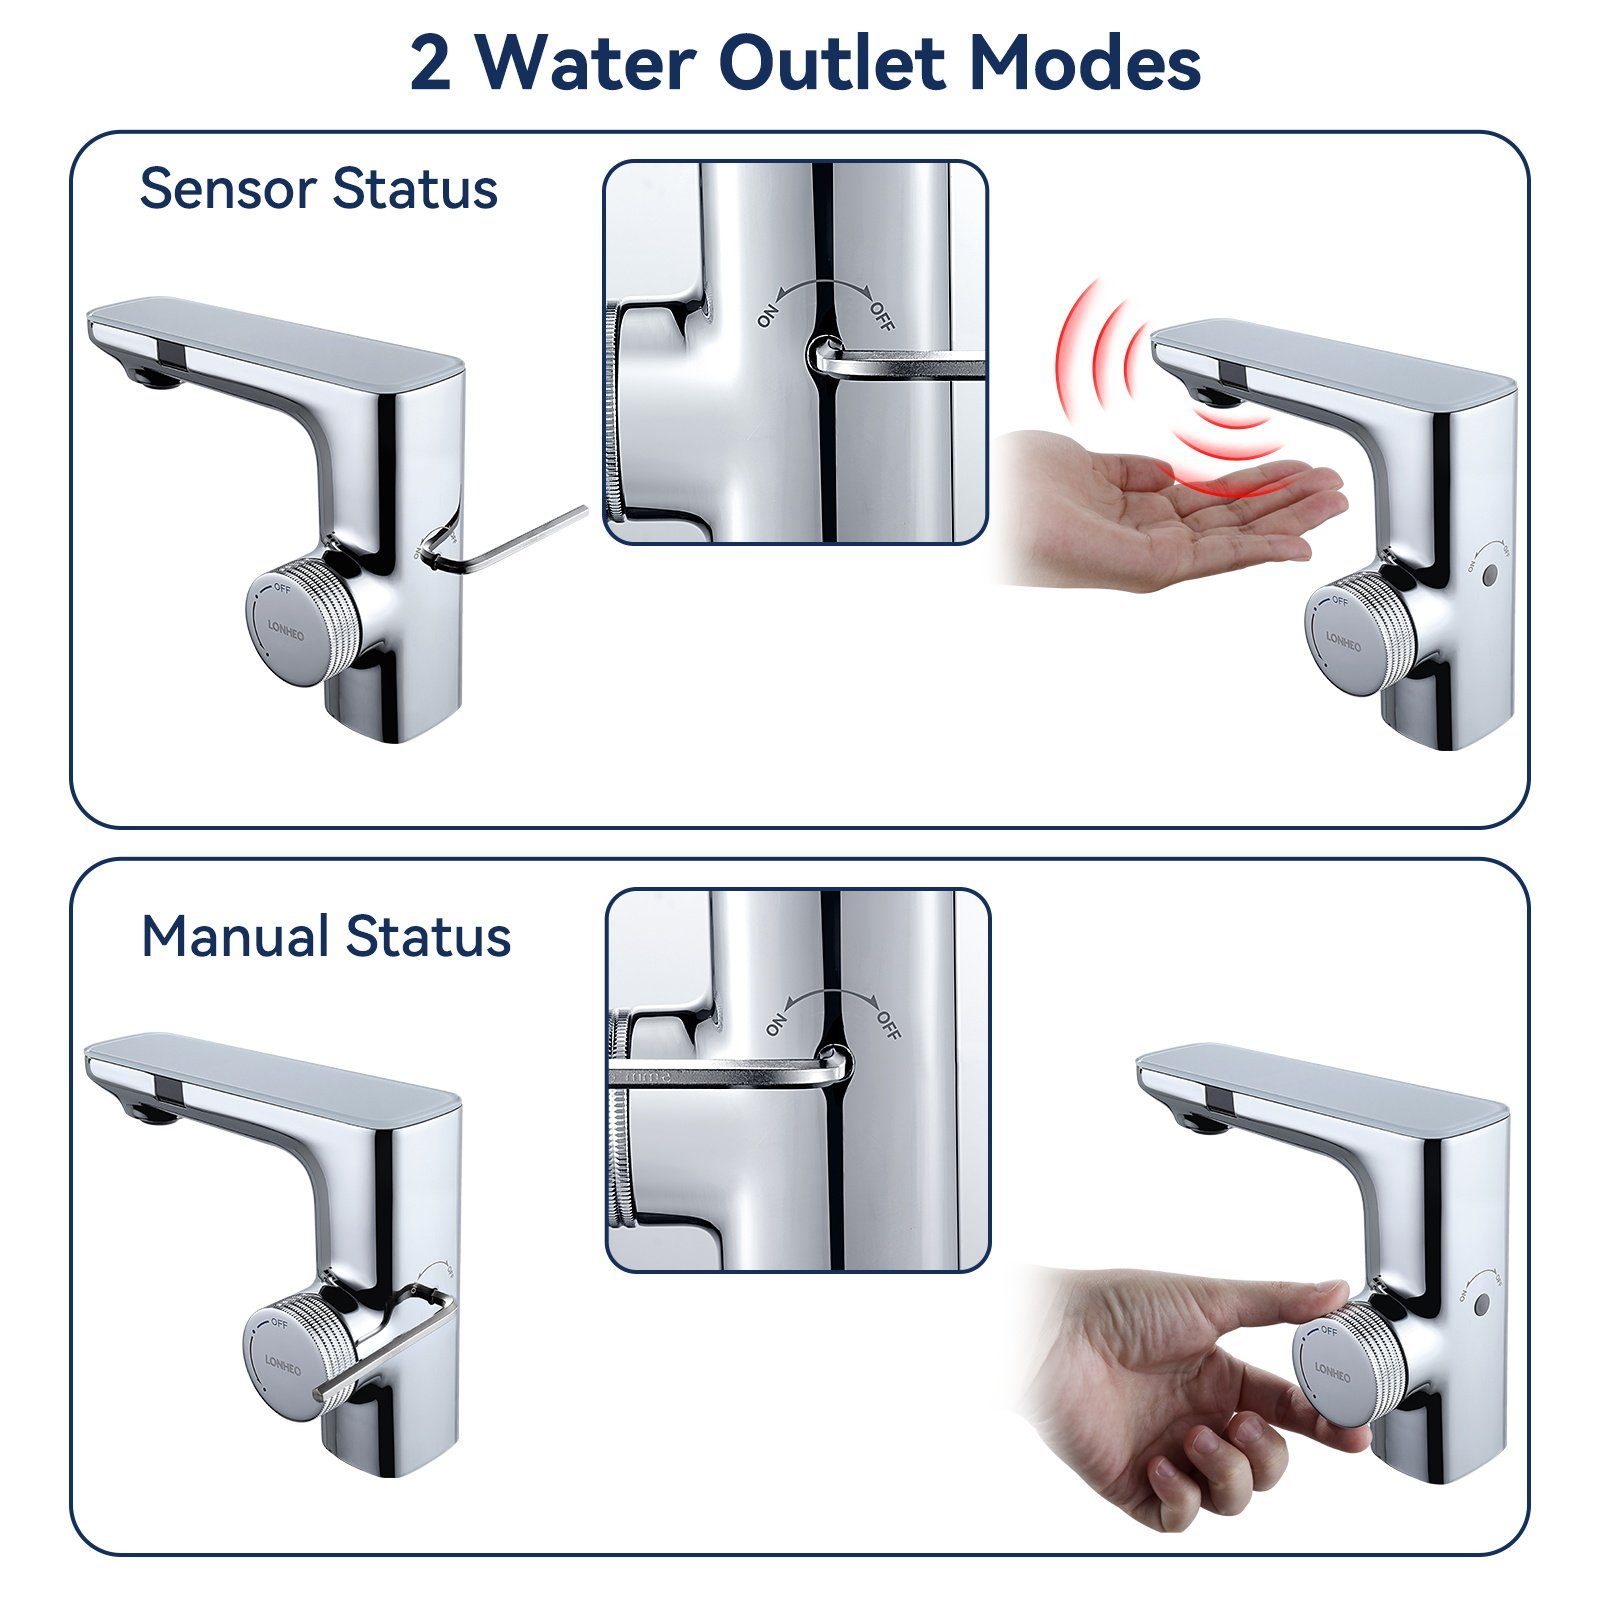 Lonheo Waschtischarmatur Sensor Mischbatterie Waschbecken IR Silber Wasserhahn Infrarot Automatik